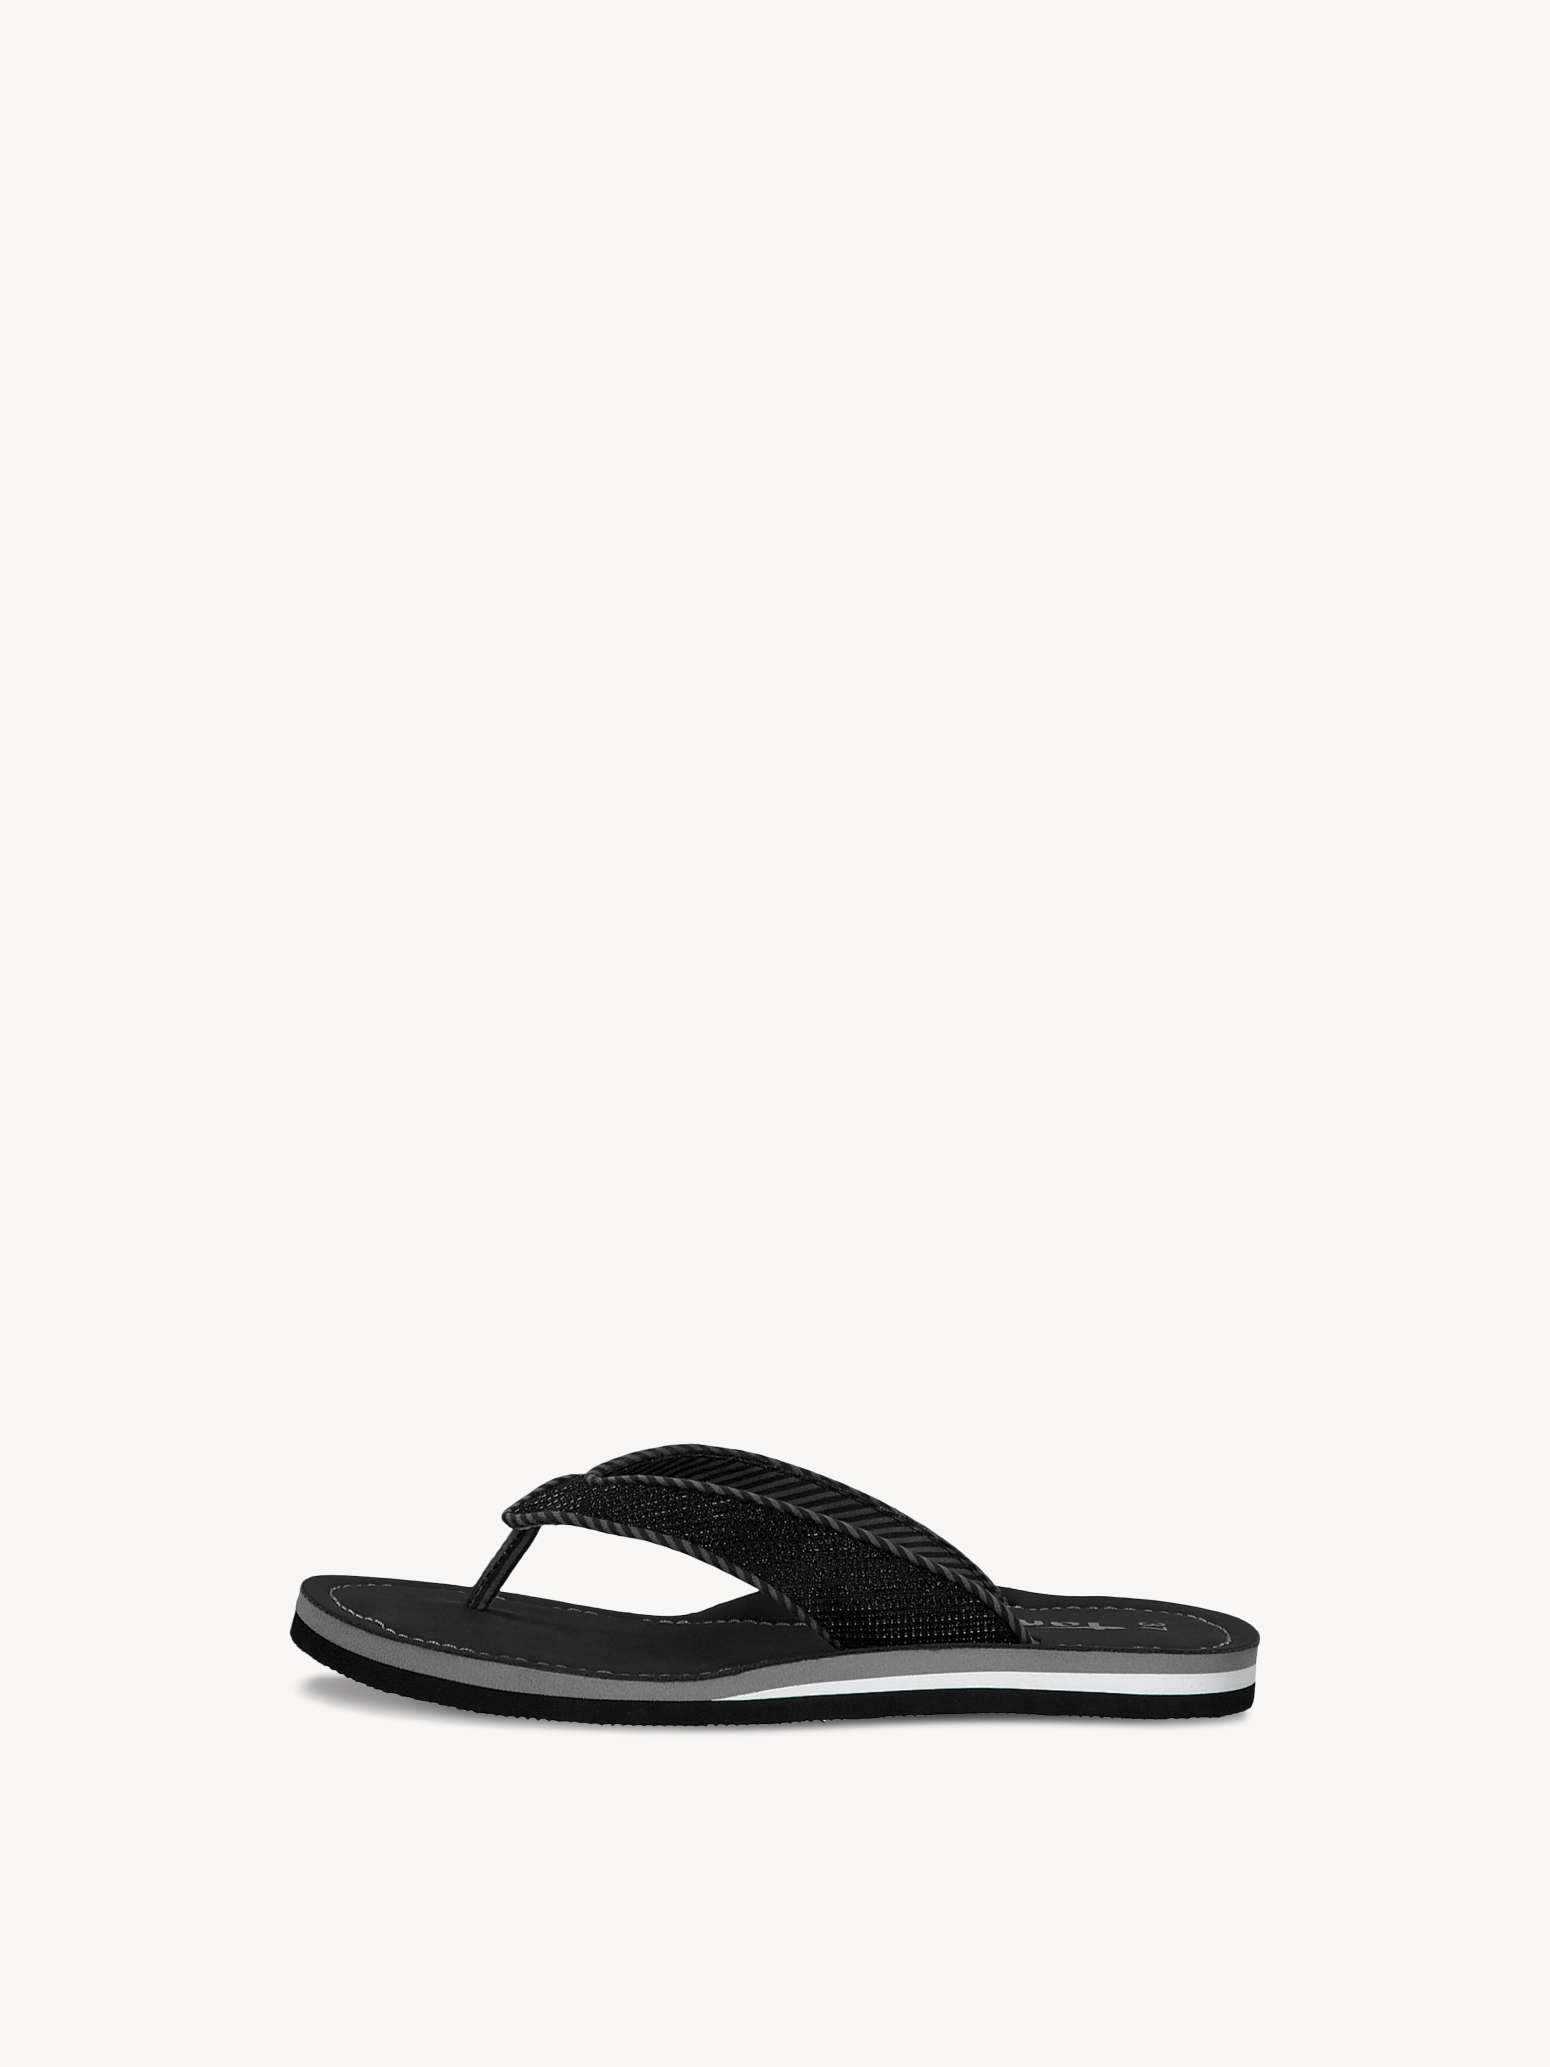 Toe 1-1-27132-34: Buy Tamaris Toe post sandals